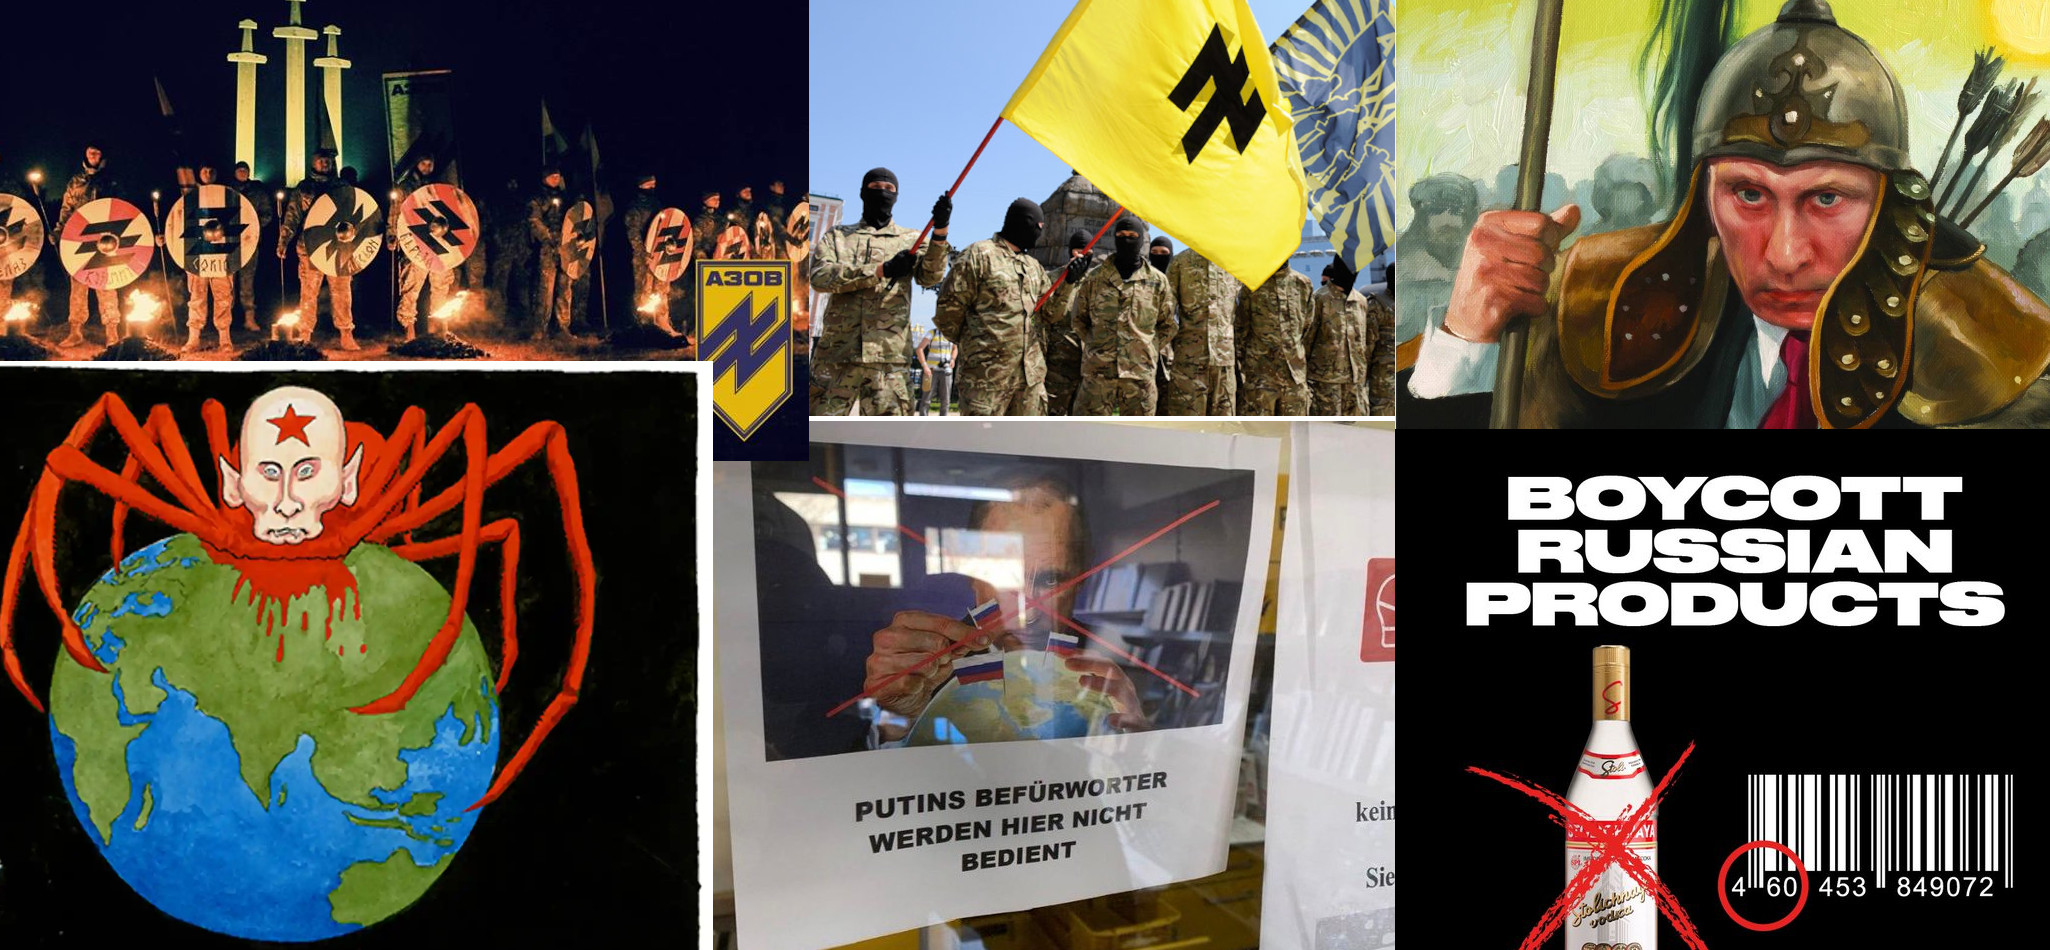 Ukraine coverage reveals West’s inherent racism